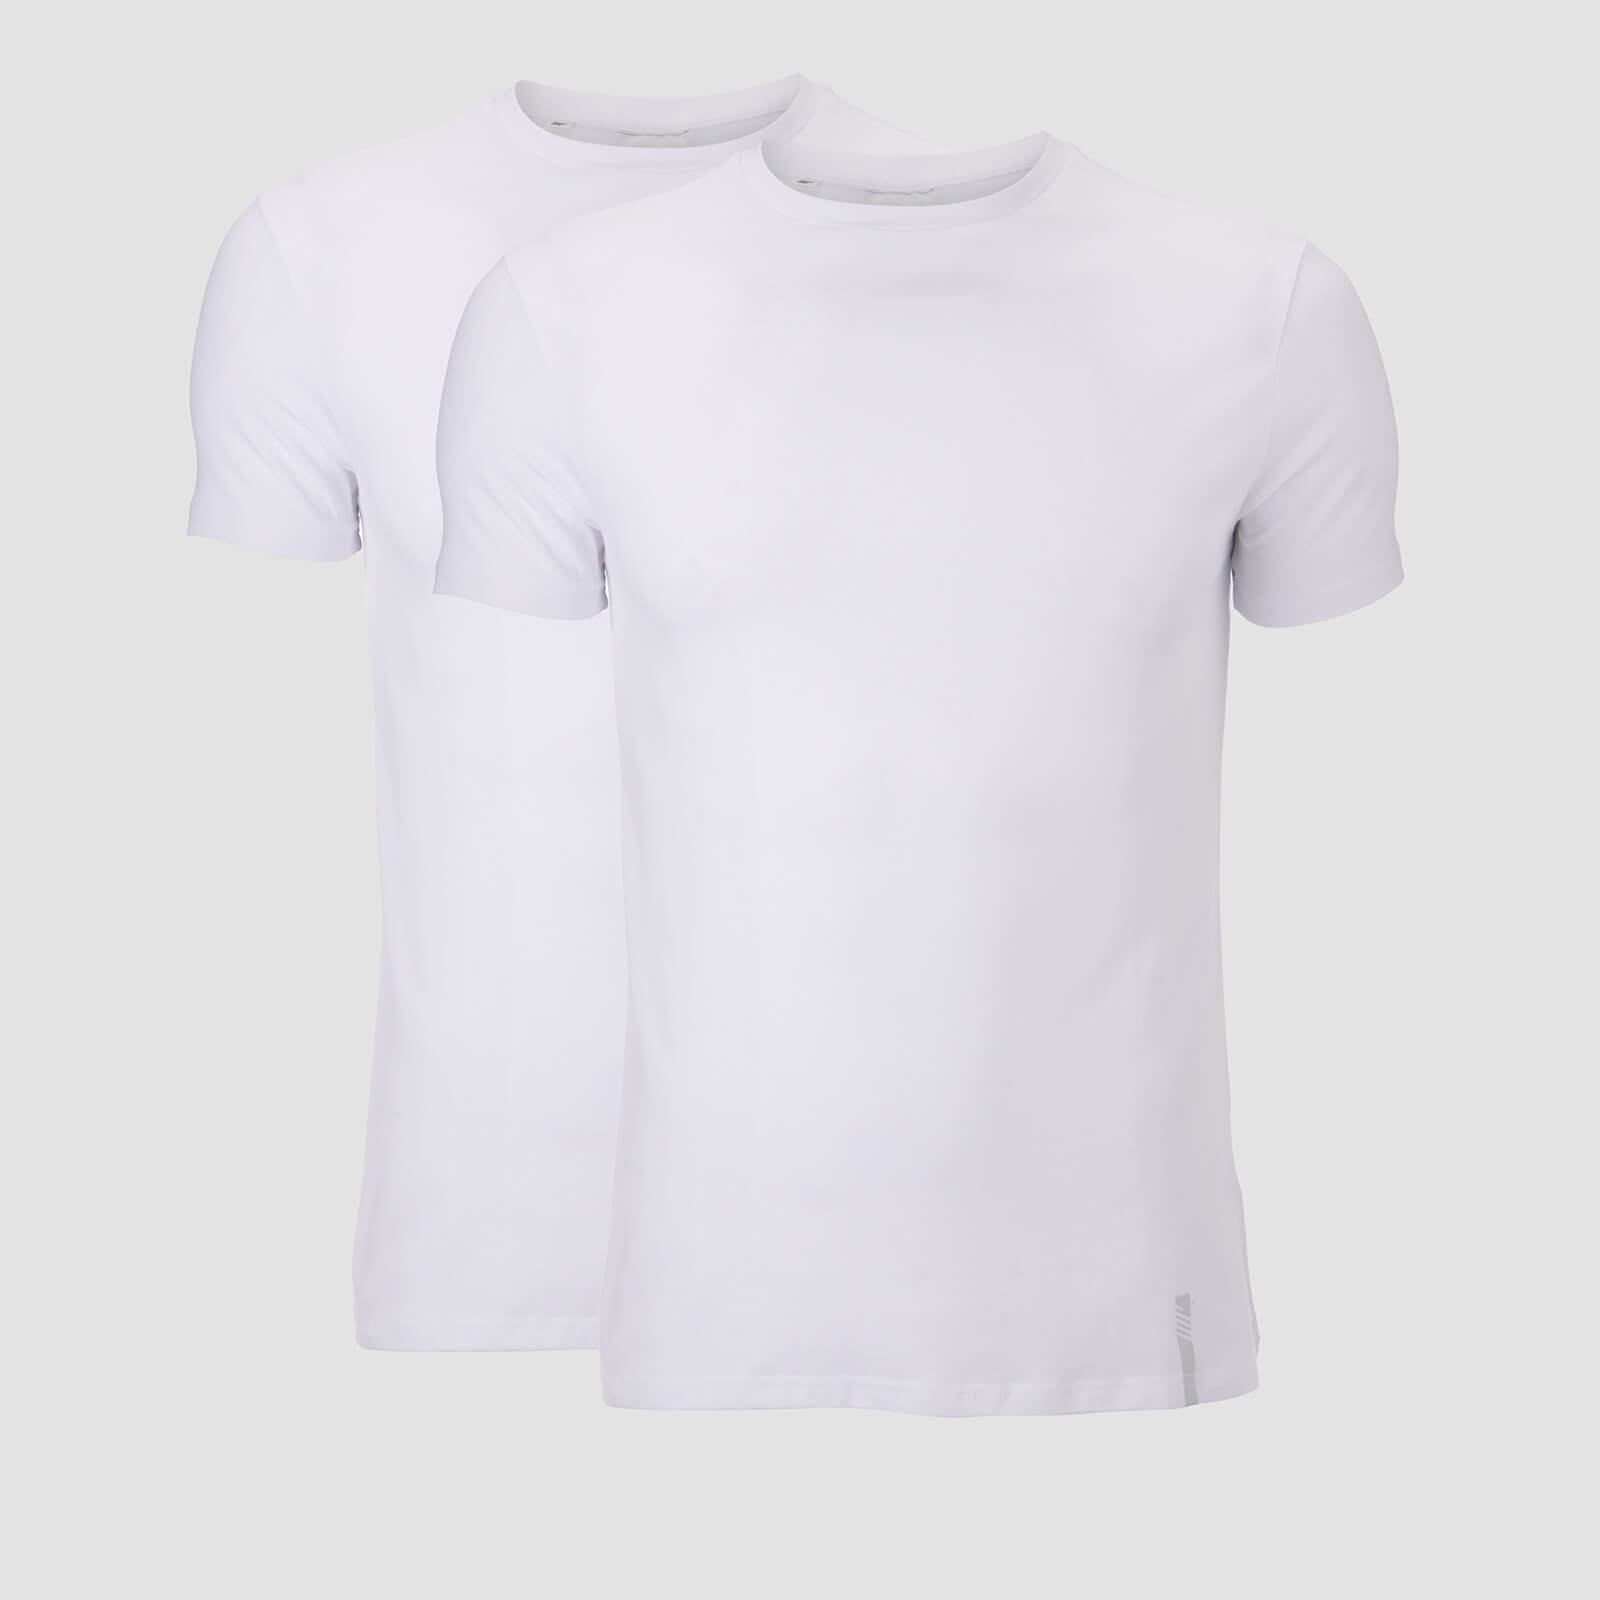 Mp T-shirt Luxe Classic (confezione da 2) - Bianco/Bianco - M